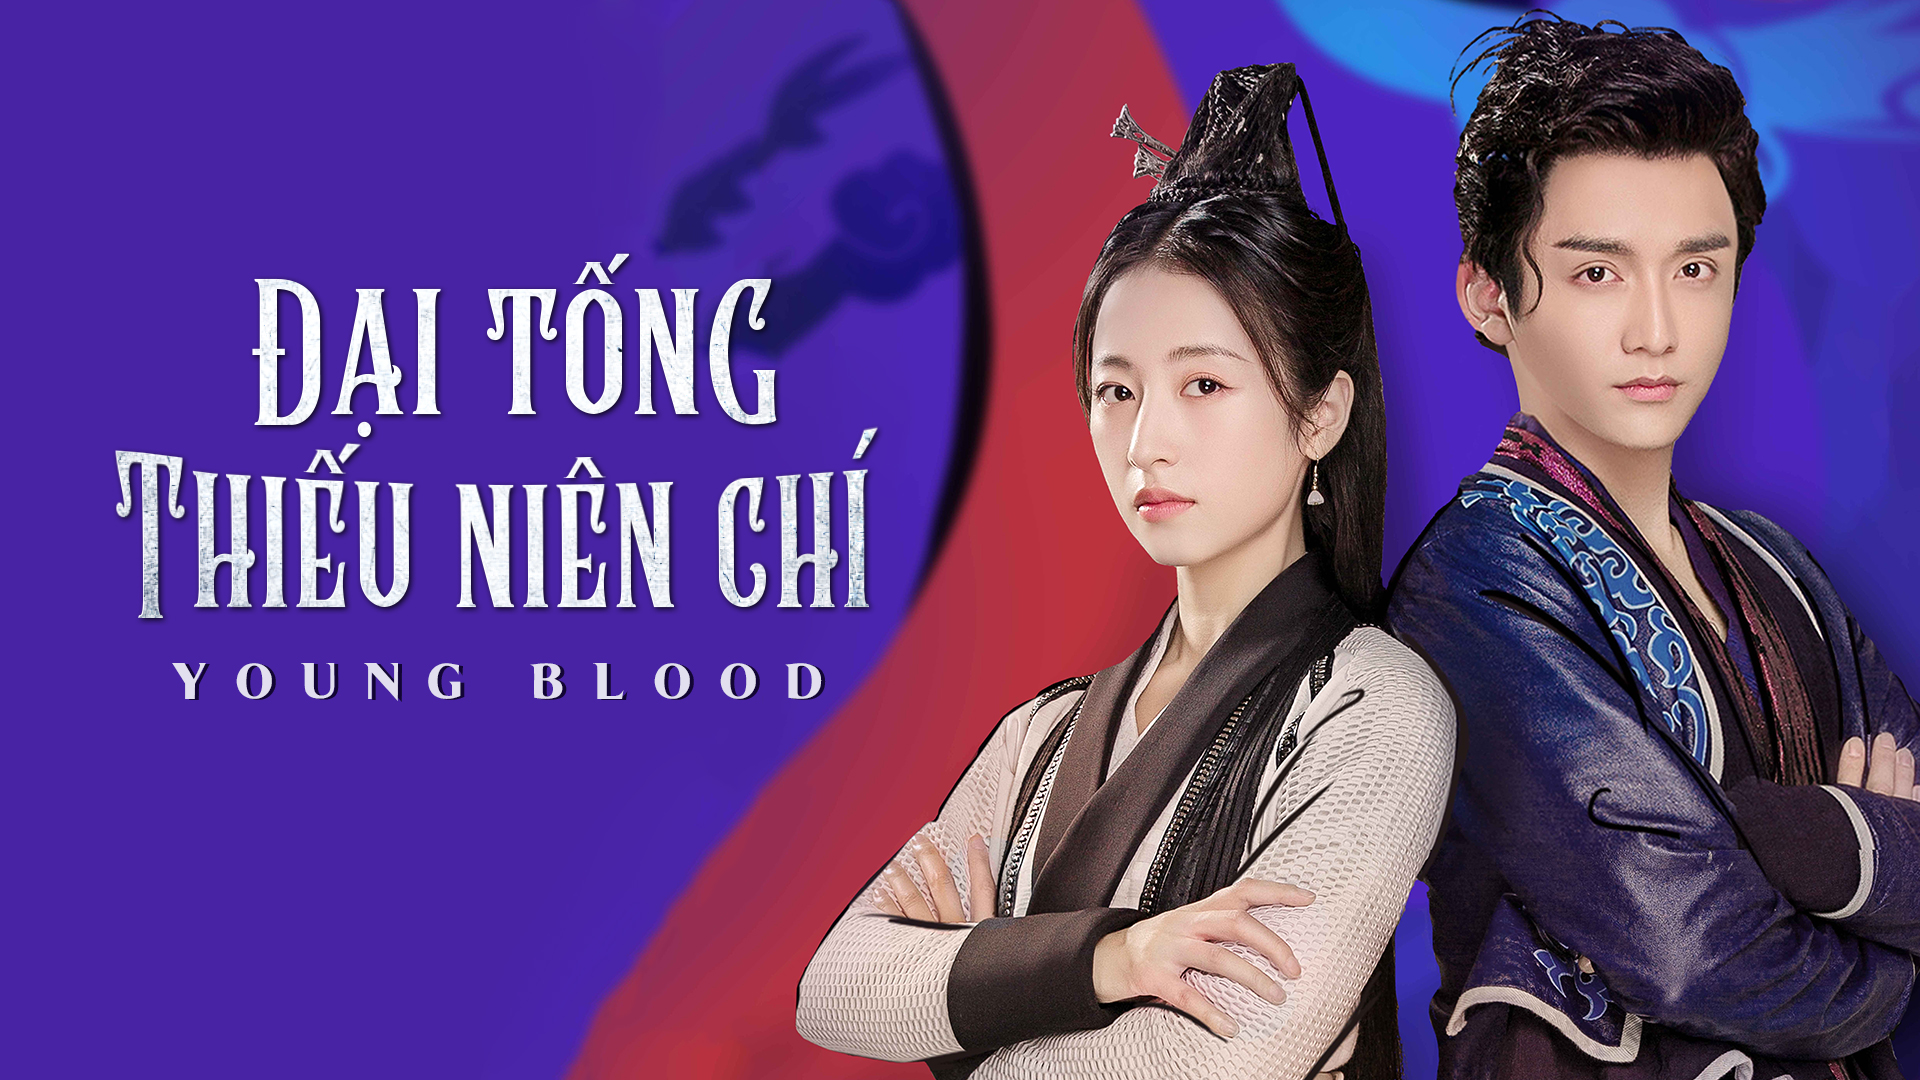 Xem Phim Đại Tống Thiếu Niên Chí, Young Blood 2019